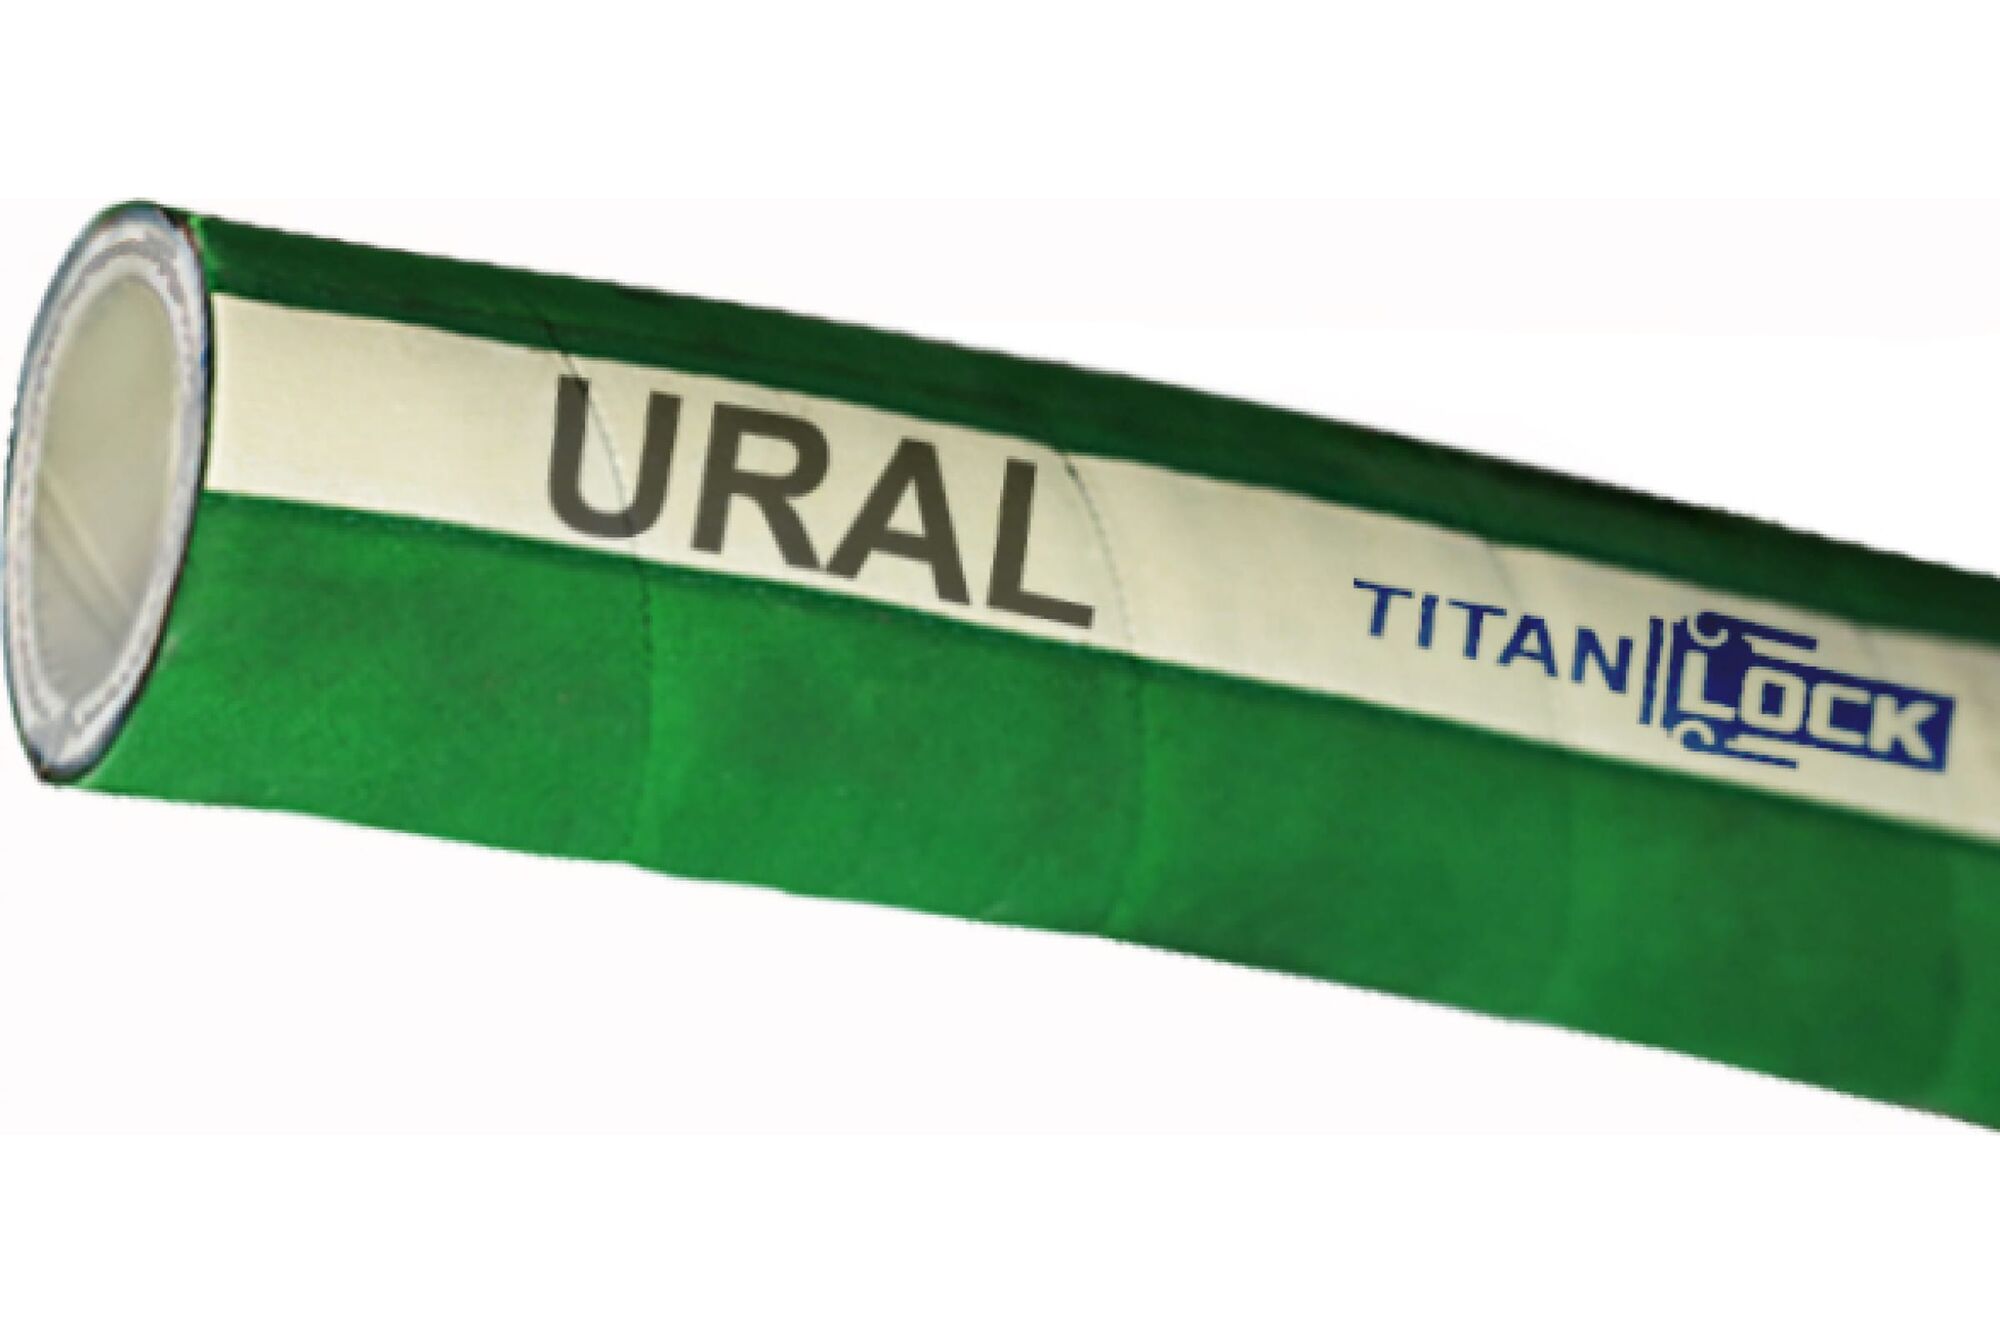 Химостойкий рукав «URAL», внутренний диаметр 76 мм, 16bar, 10 метров, UHMWPE, н/в TITAN LOCK TL076UR